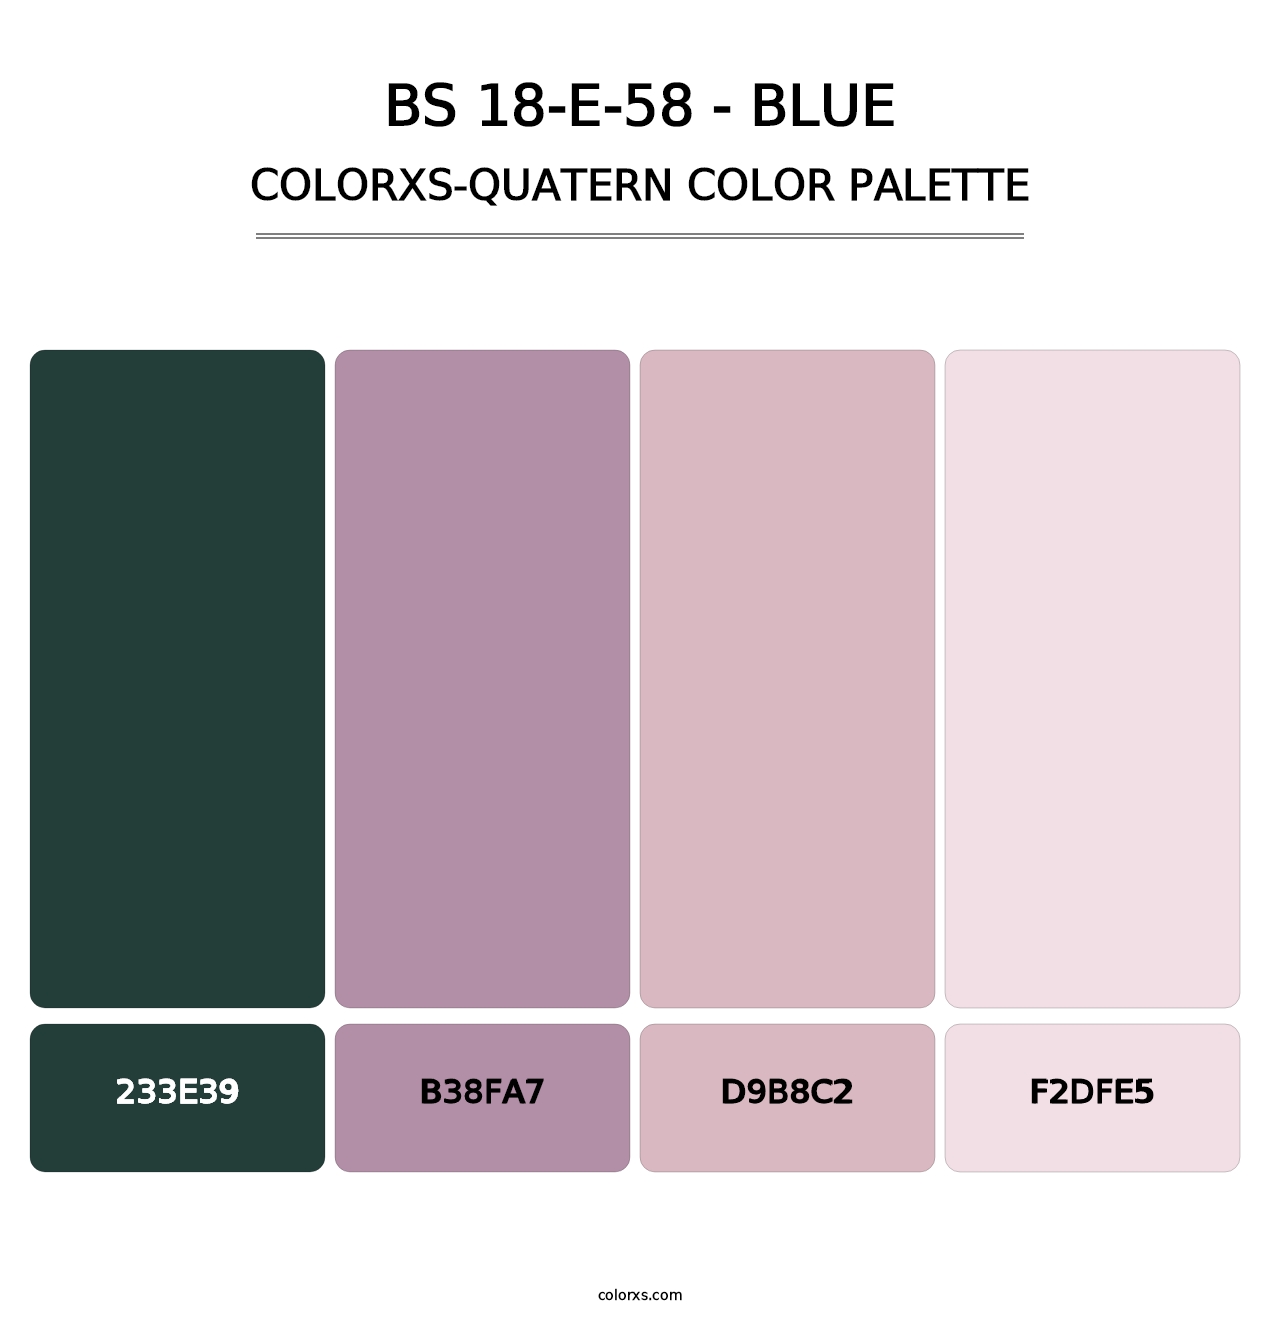 BS 18-E-58 - Blue - Colorxs Quatern Palette